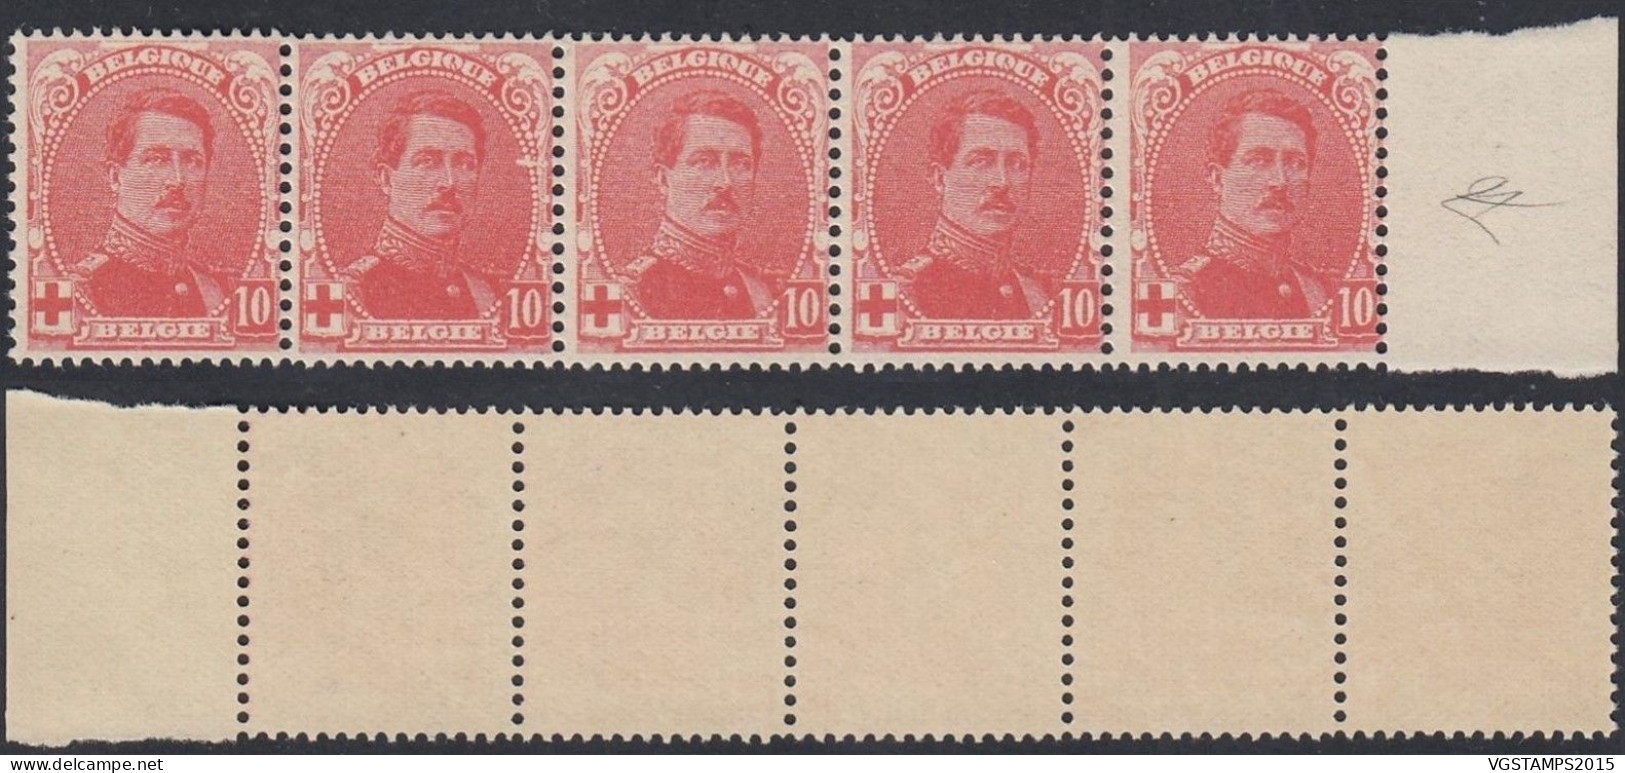 Belgique 1914 - Timbres Neufs. Nr.: 130 V. Bande De 5 Timbres................ (EB) AR-02046 - 1914-1915 Red Cross